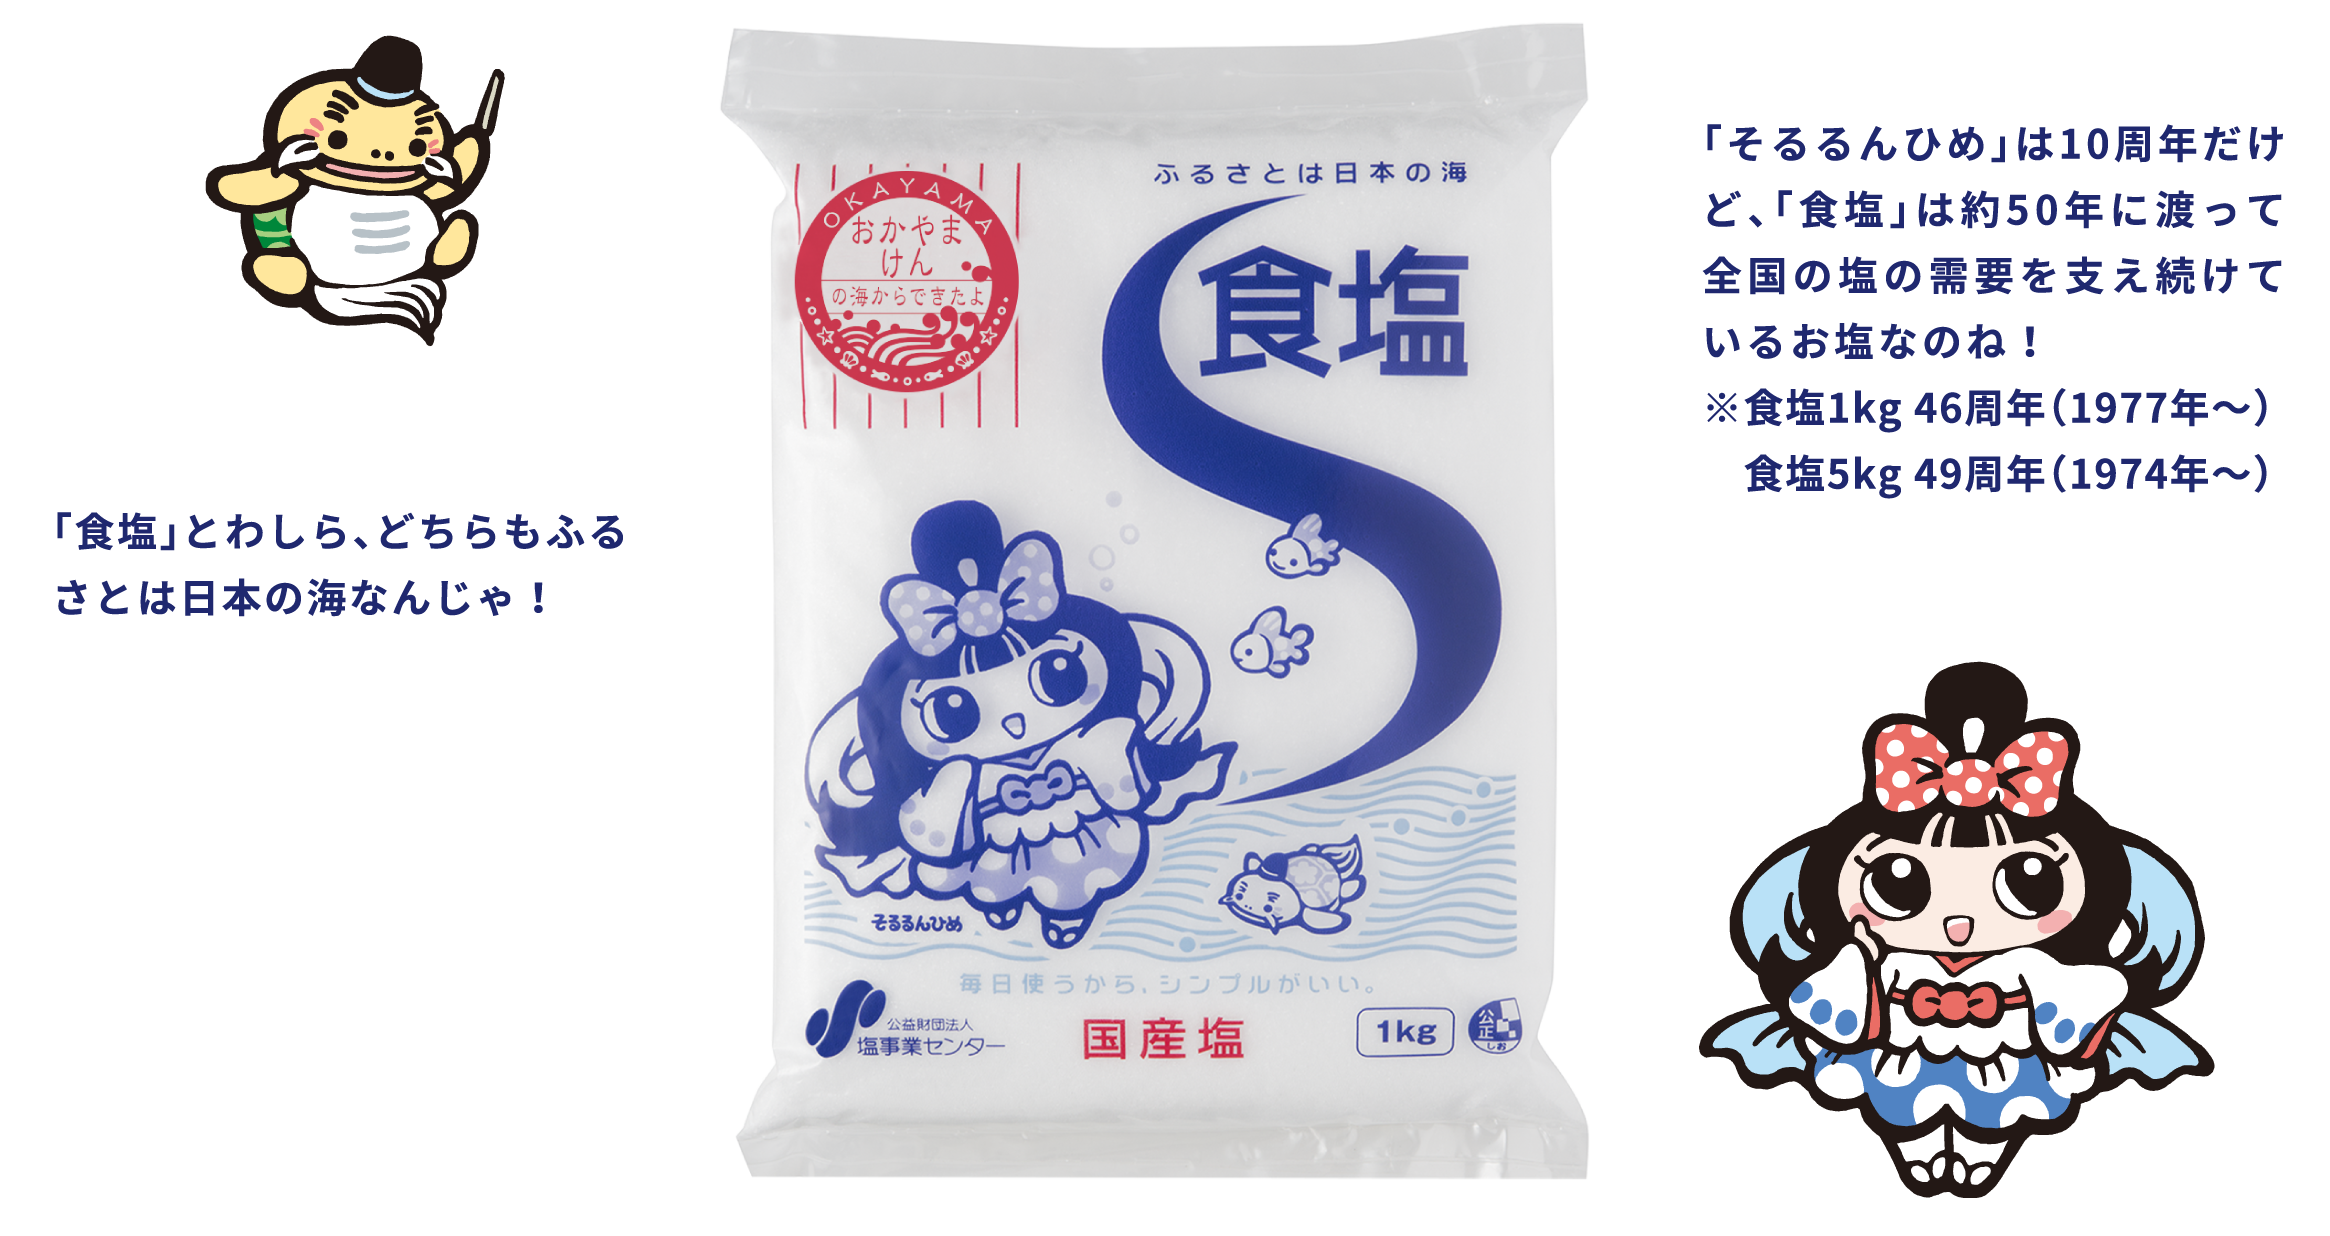 「そるるんひめ」は10周年だけど、「食塩」は約50年に渡って全国の塩の需要を支え続けているお塩なのね！※食塩1kg 46周年（1977年～） 食塩5kg 49周年（1974年～） 「食塩」とわしら、どちらもふるさとは日本の海なんじゃ！